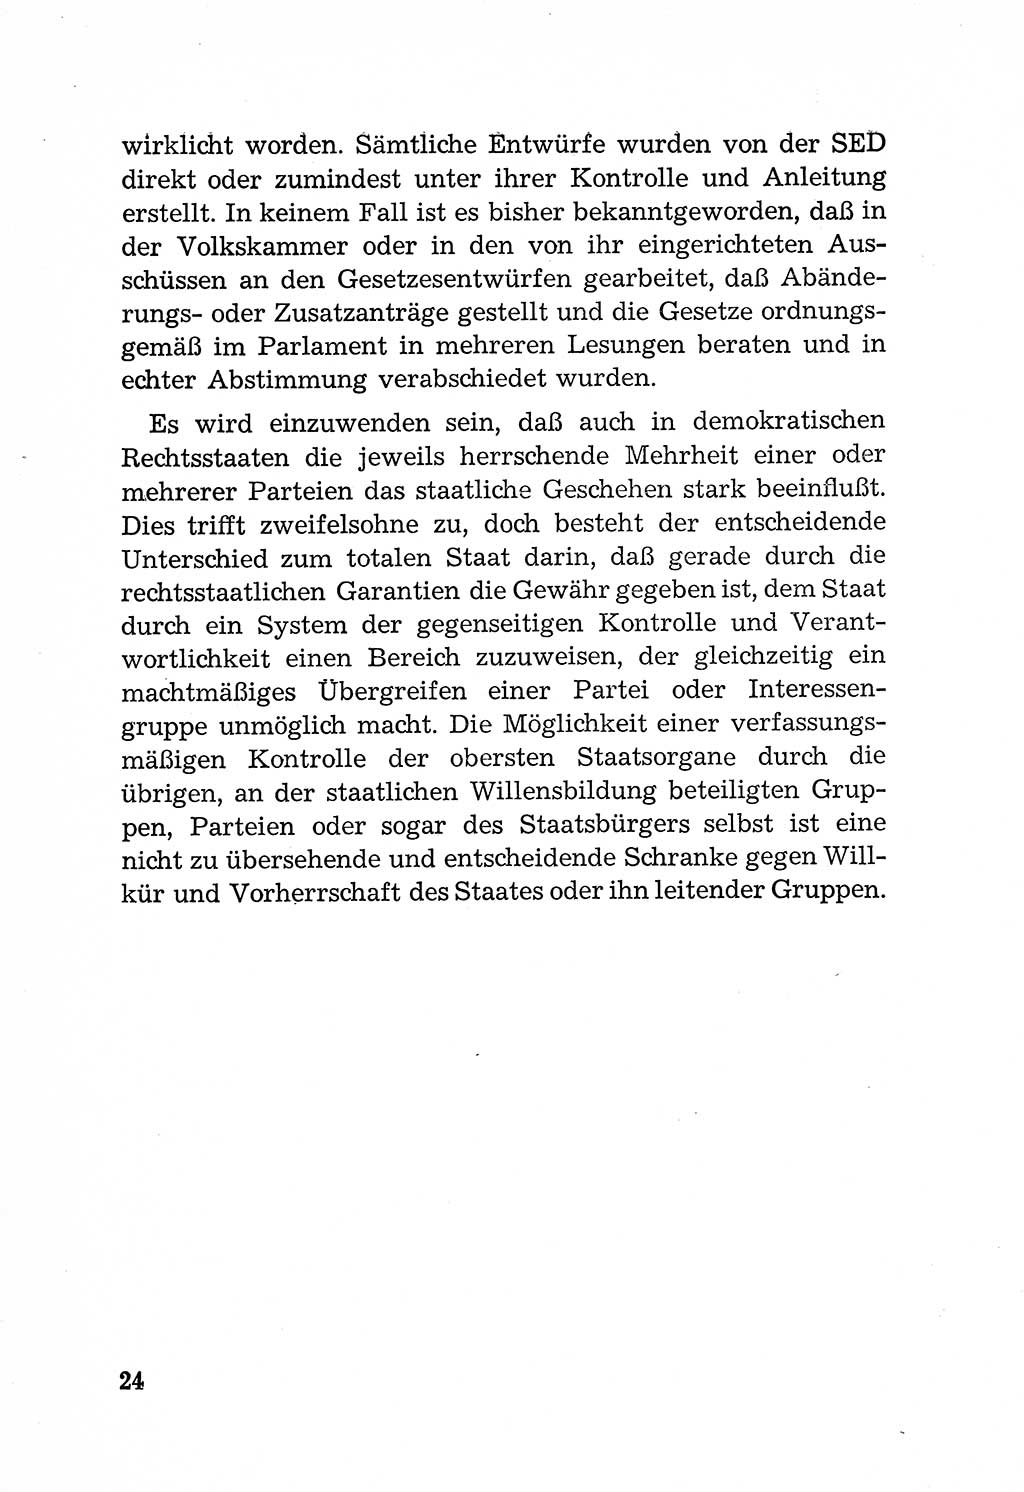 Rechtsstaat in zweierlei Hinsicht, Untersuchungsausschuß freiheitlicher Juristen (UfJ) [Bundesrepublik Deutschland (BRD)] 1956, Seite 24 (R.-St. UfJ BRD 1956, S. 24)